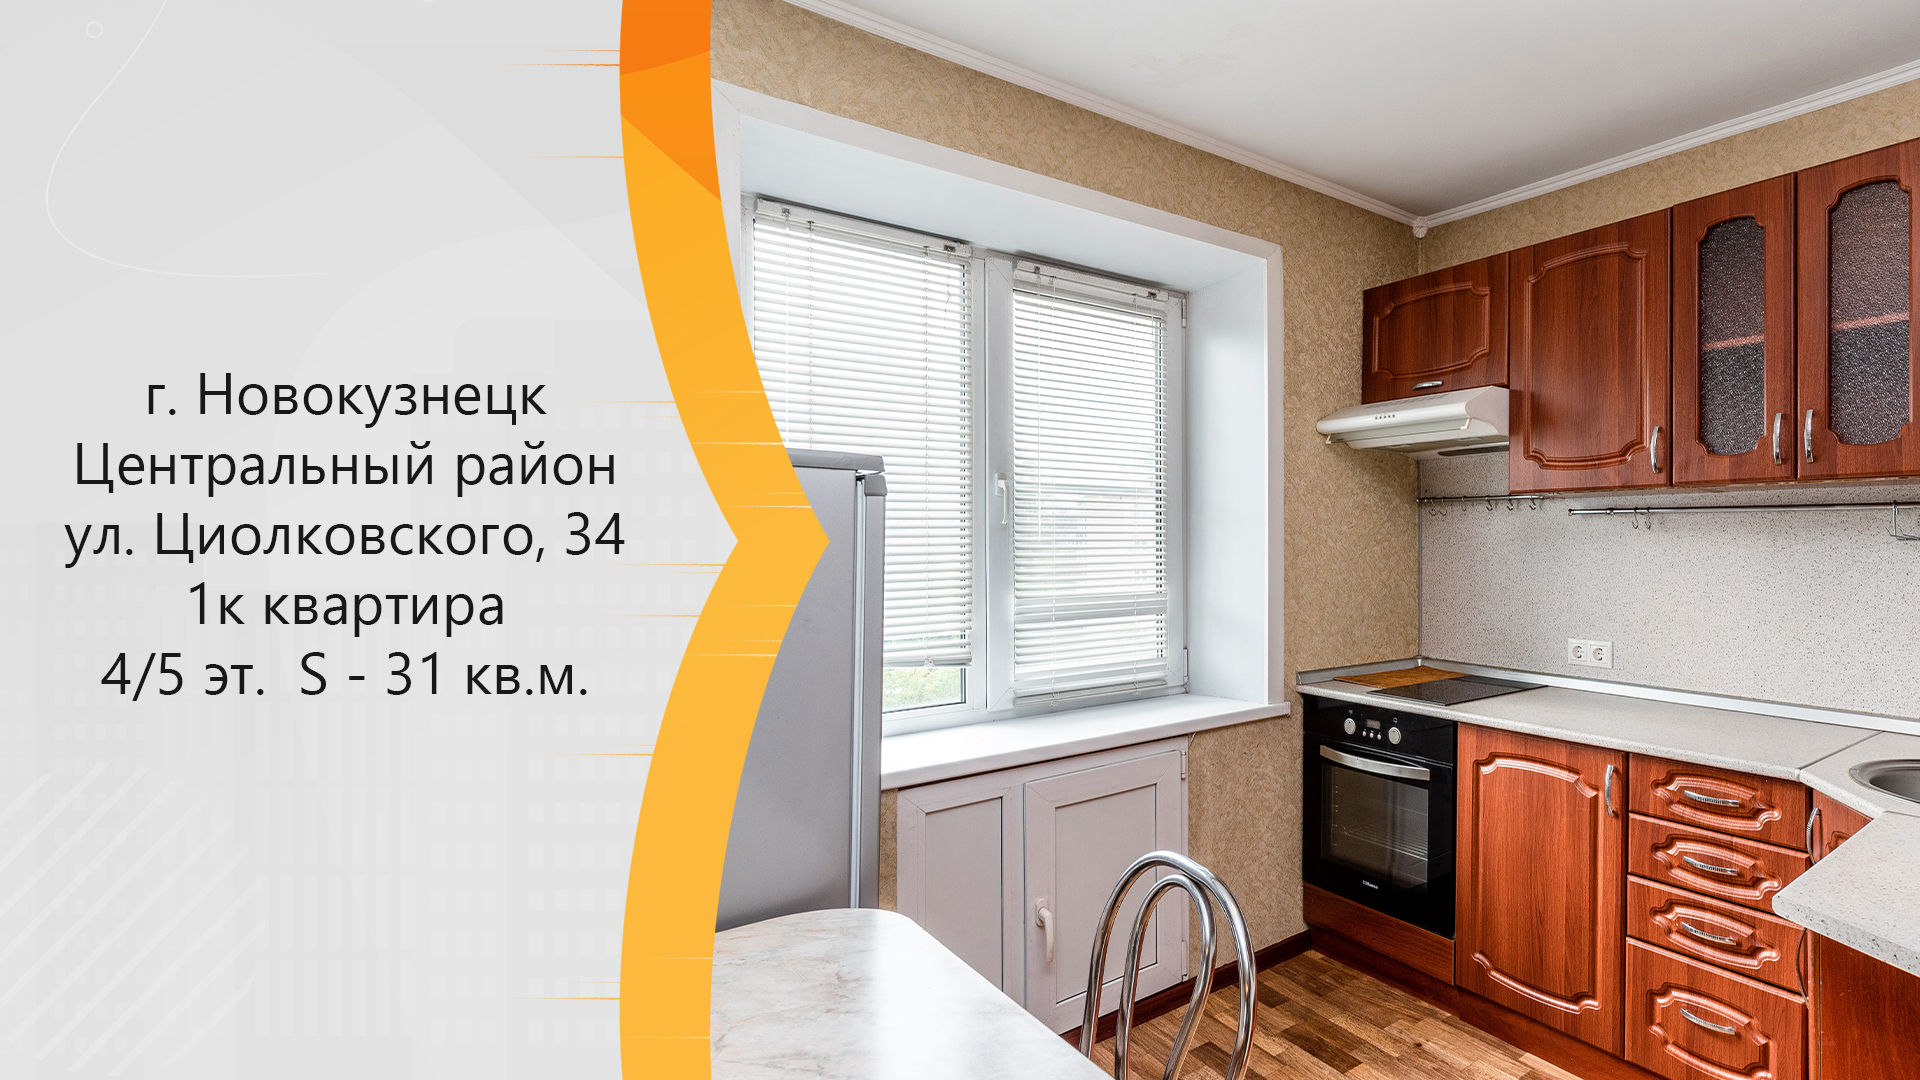 Купить квартиру на Циолковского в Новокузнецке. 4 комнатные квартиры новокузнецк